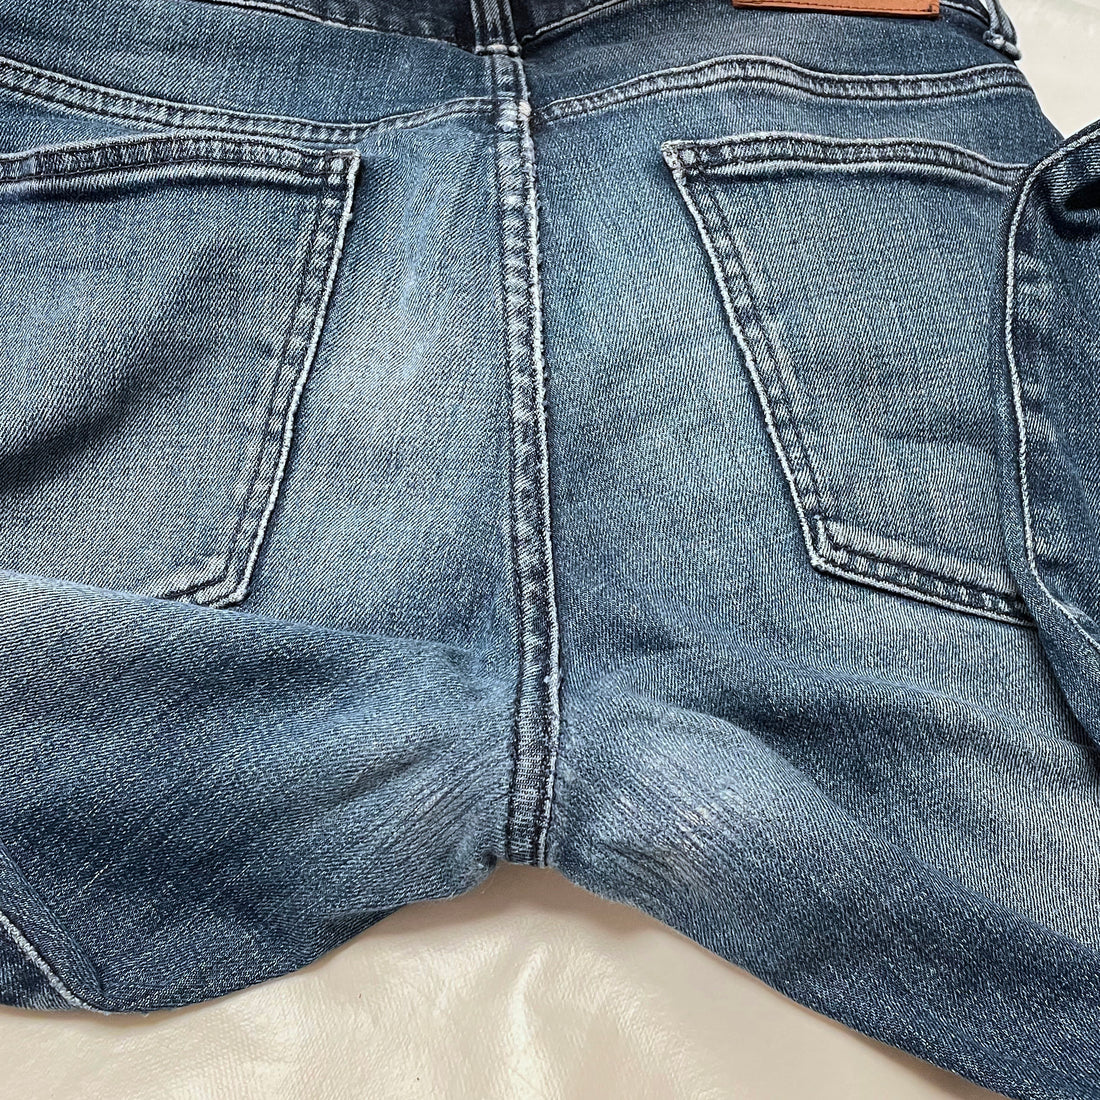 Laga dina jeans snyggt och diskret gör så här